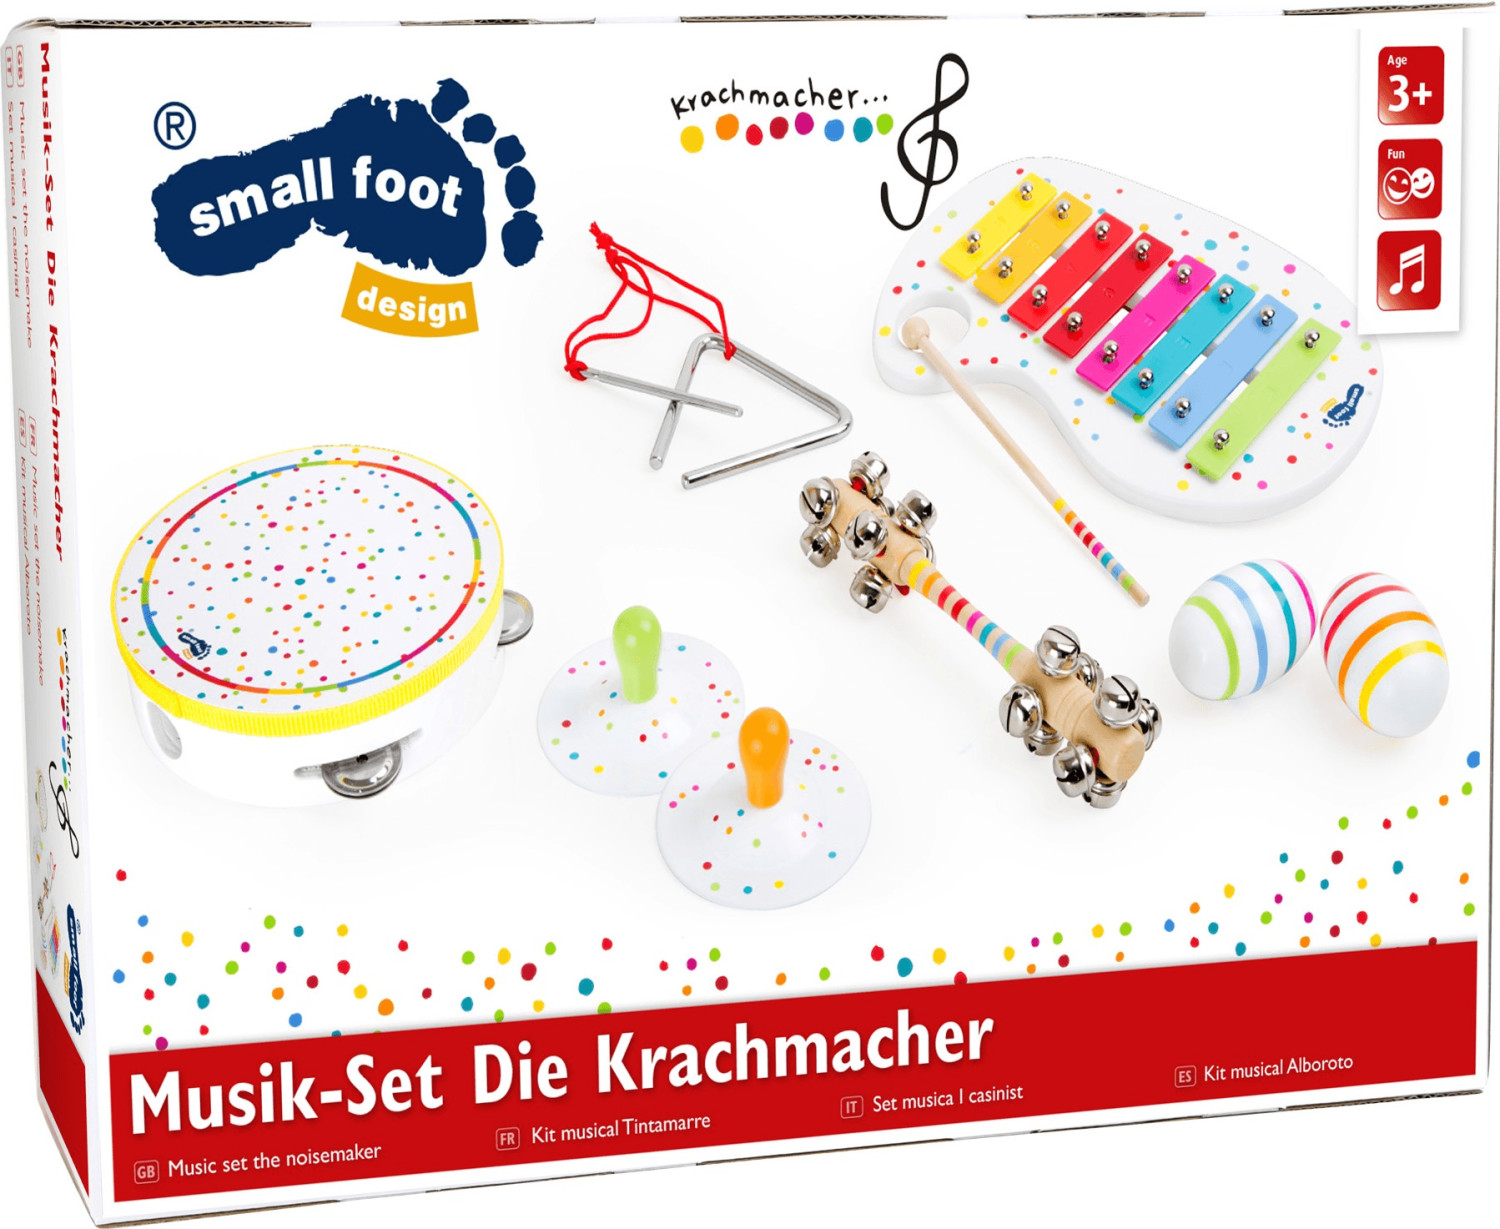 Small Foot Design Die Krachmacher Musik-Set (10383)